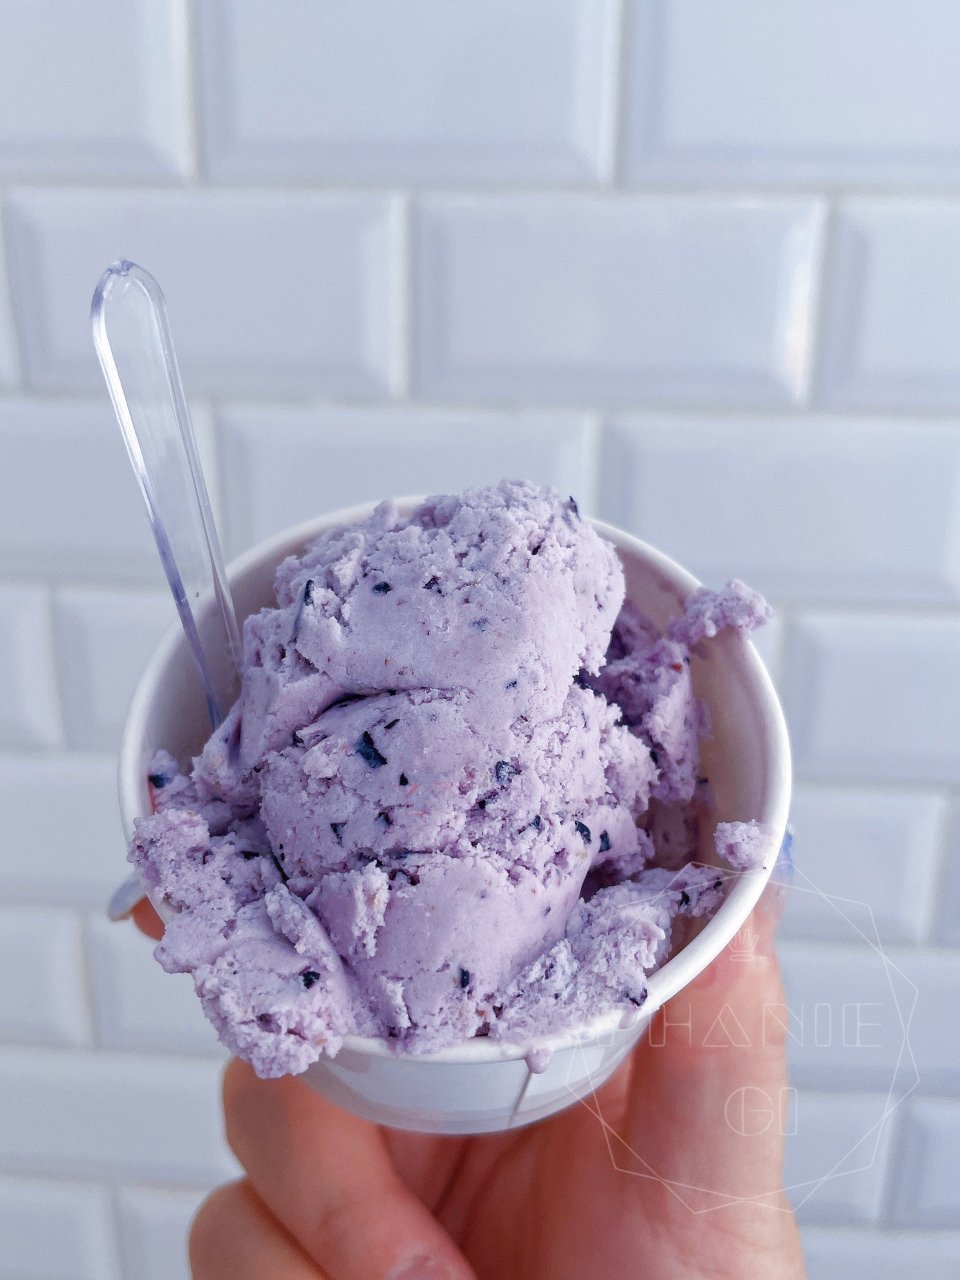 路过刚开的冰淇淋大学🍦蓝莓薰衣草味不错呀...